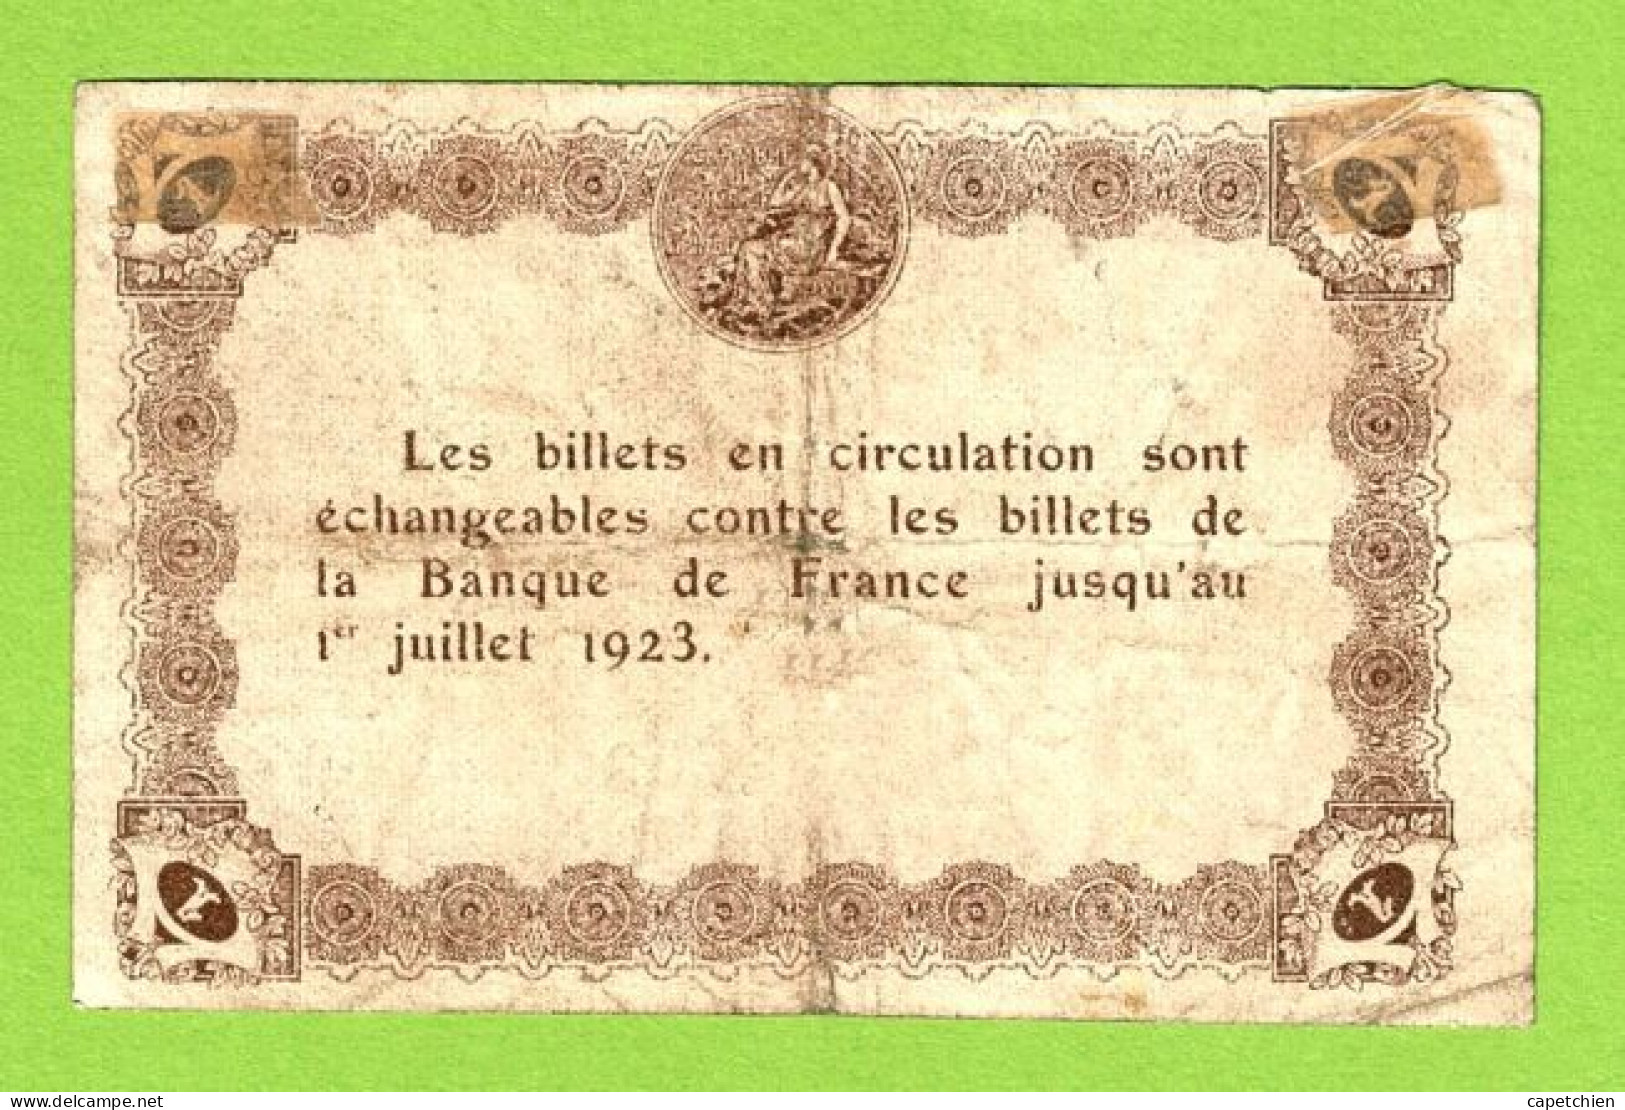 FRANCE / EPINAL / 1 FRANC/ 20 MAI 1920 / N° 673703 - Handelskammer